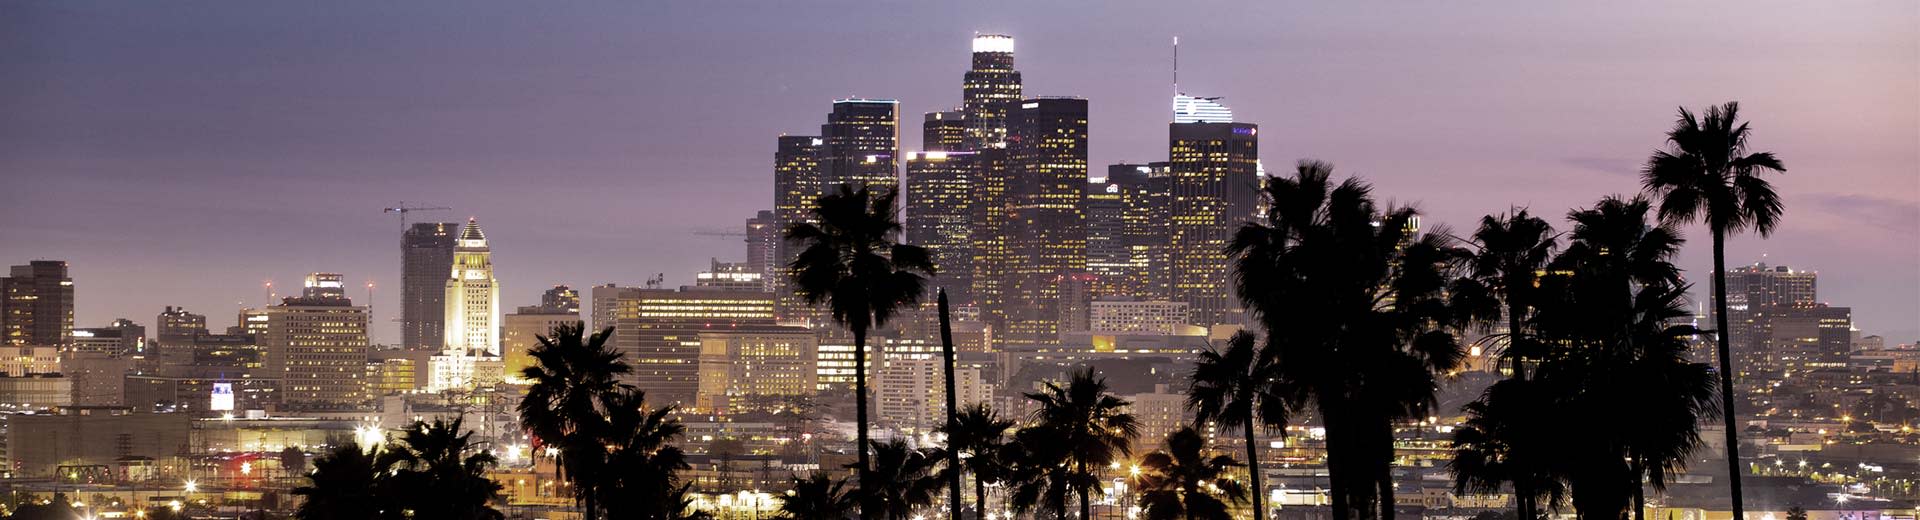 Las palmeras por la noche y los rascacielos del centro de Los Ángeles iluminan el cielo.